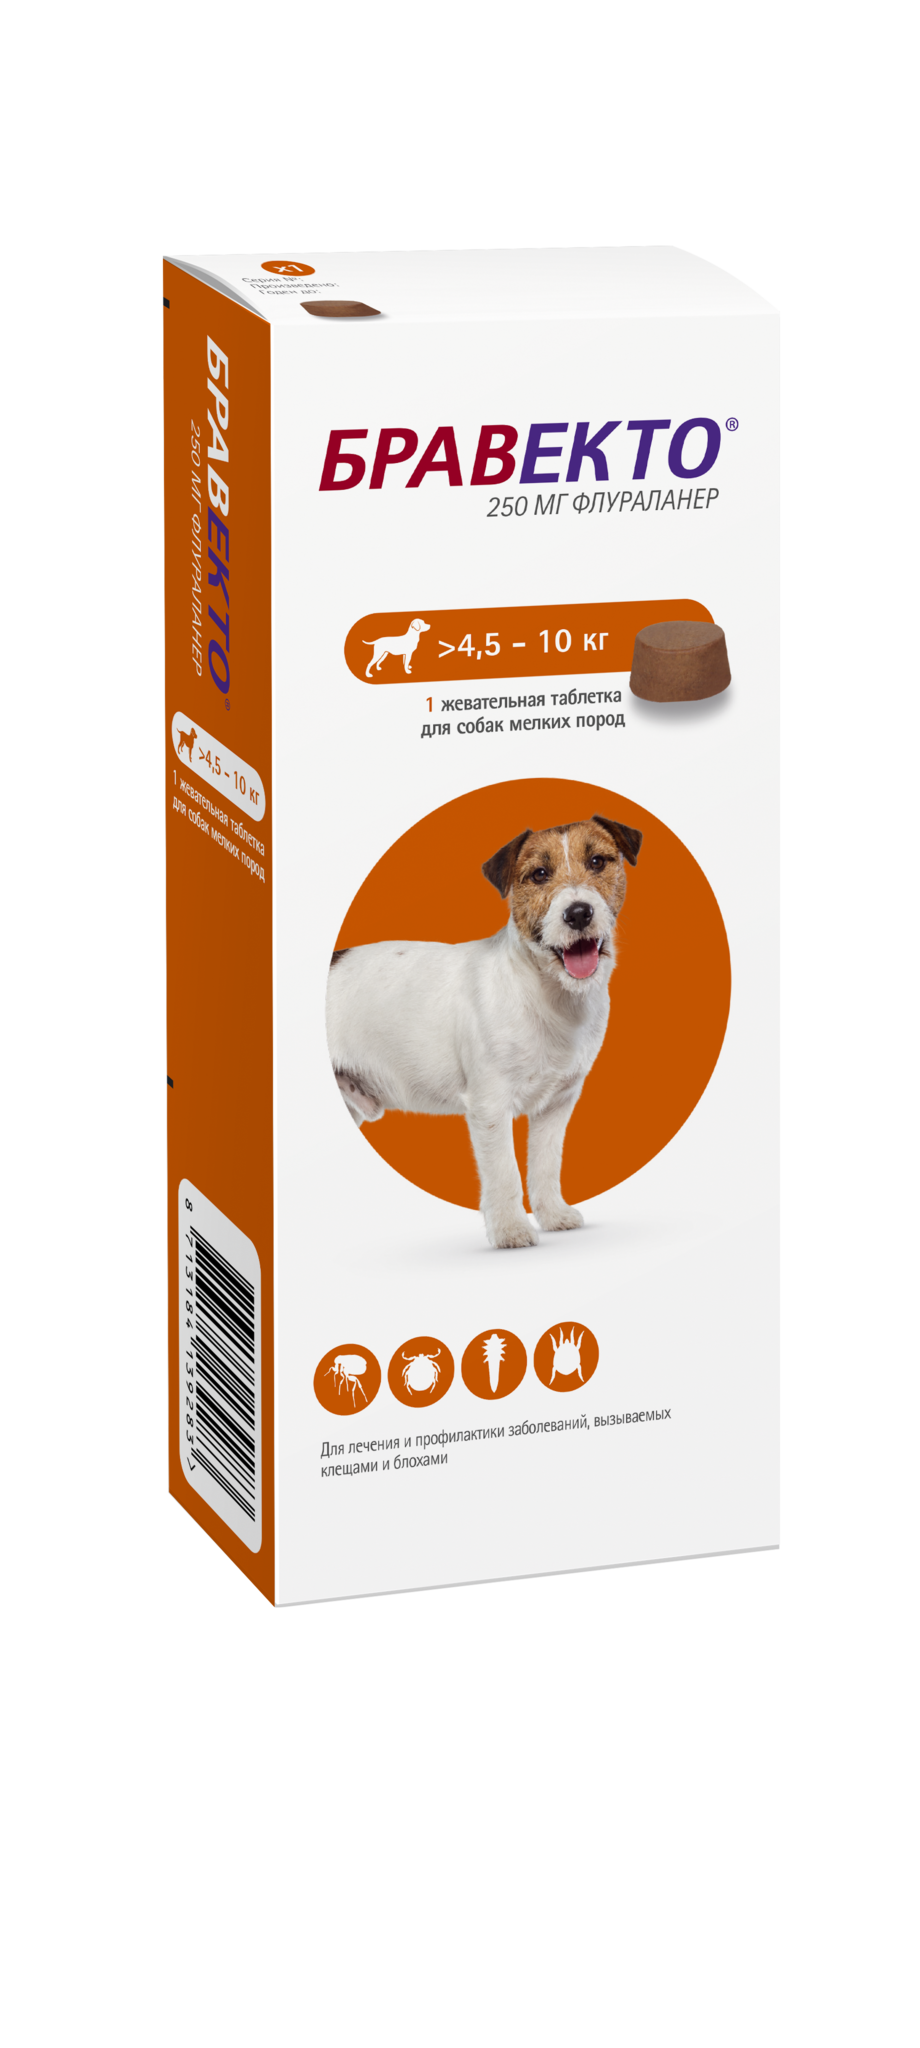 Бравекто для собак купить 5 10. Бравекто таблетки для собак 10-20 кг. Бравекто таблетка жевательная 1400 мг. Бравекто 250 мг для собак. Бравекто таблетки 4.5 - 10.